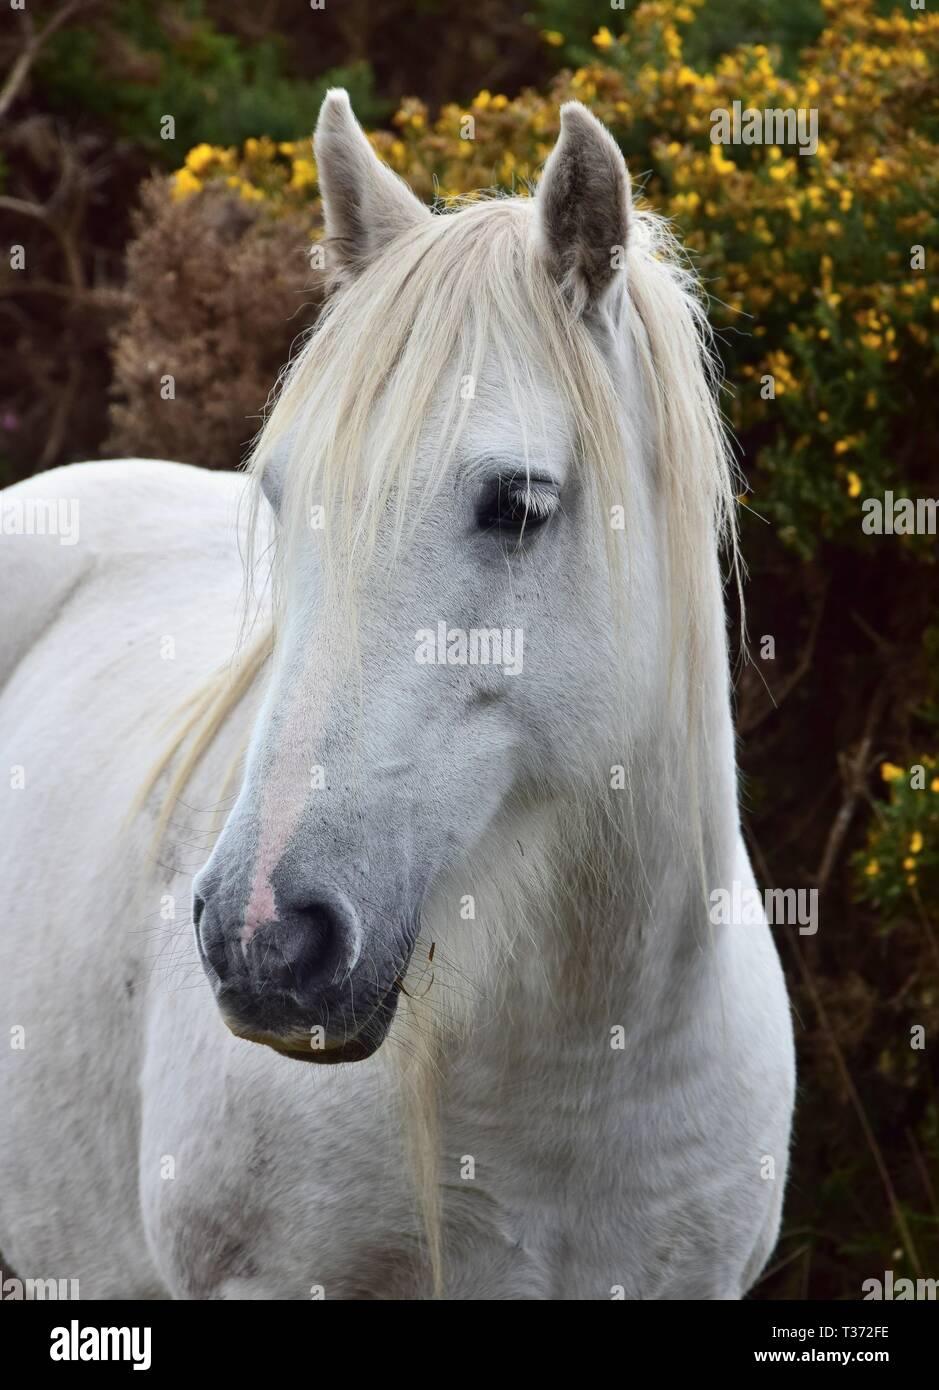 Porträt einer wunderschönen weissen Pferd in Irland. Buchsen mit gelben Blüten im Hintergrund. Stockfoto